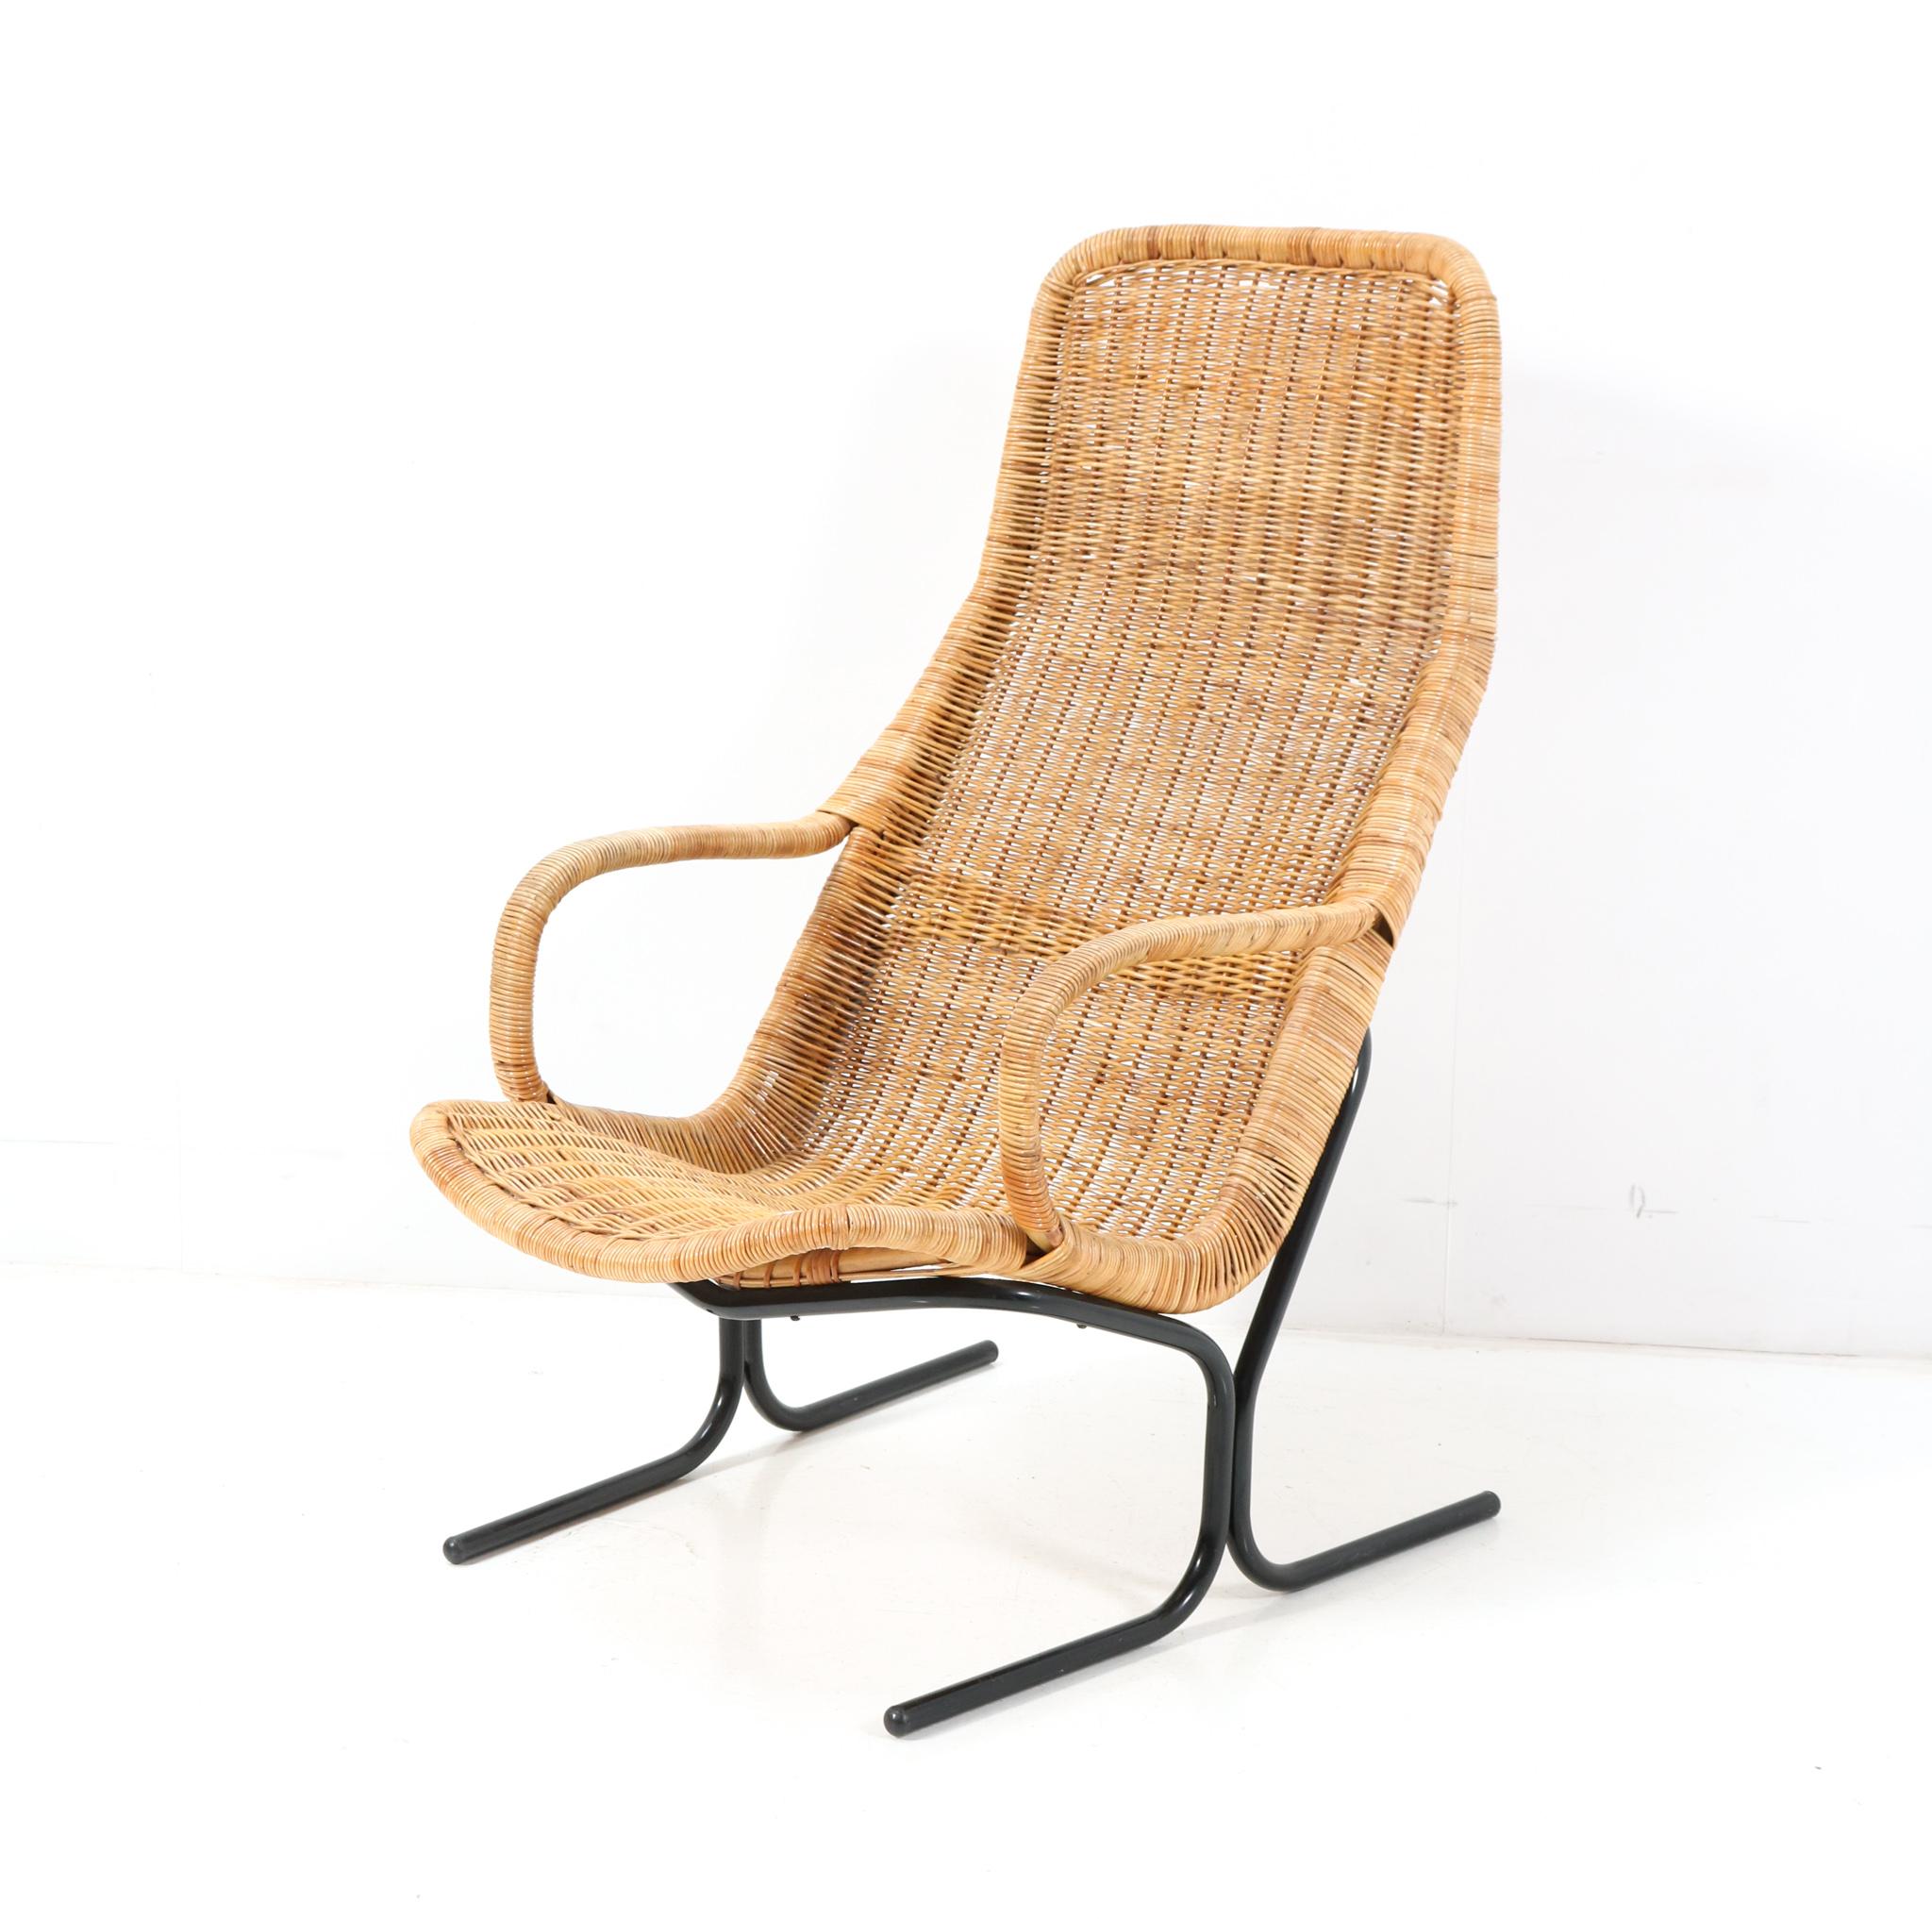 Steel Wicker Mid-Century Modern 514 Lounge Chair by Dirk van Sliedrecht, 1961 For Sale